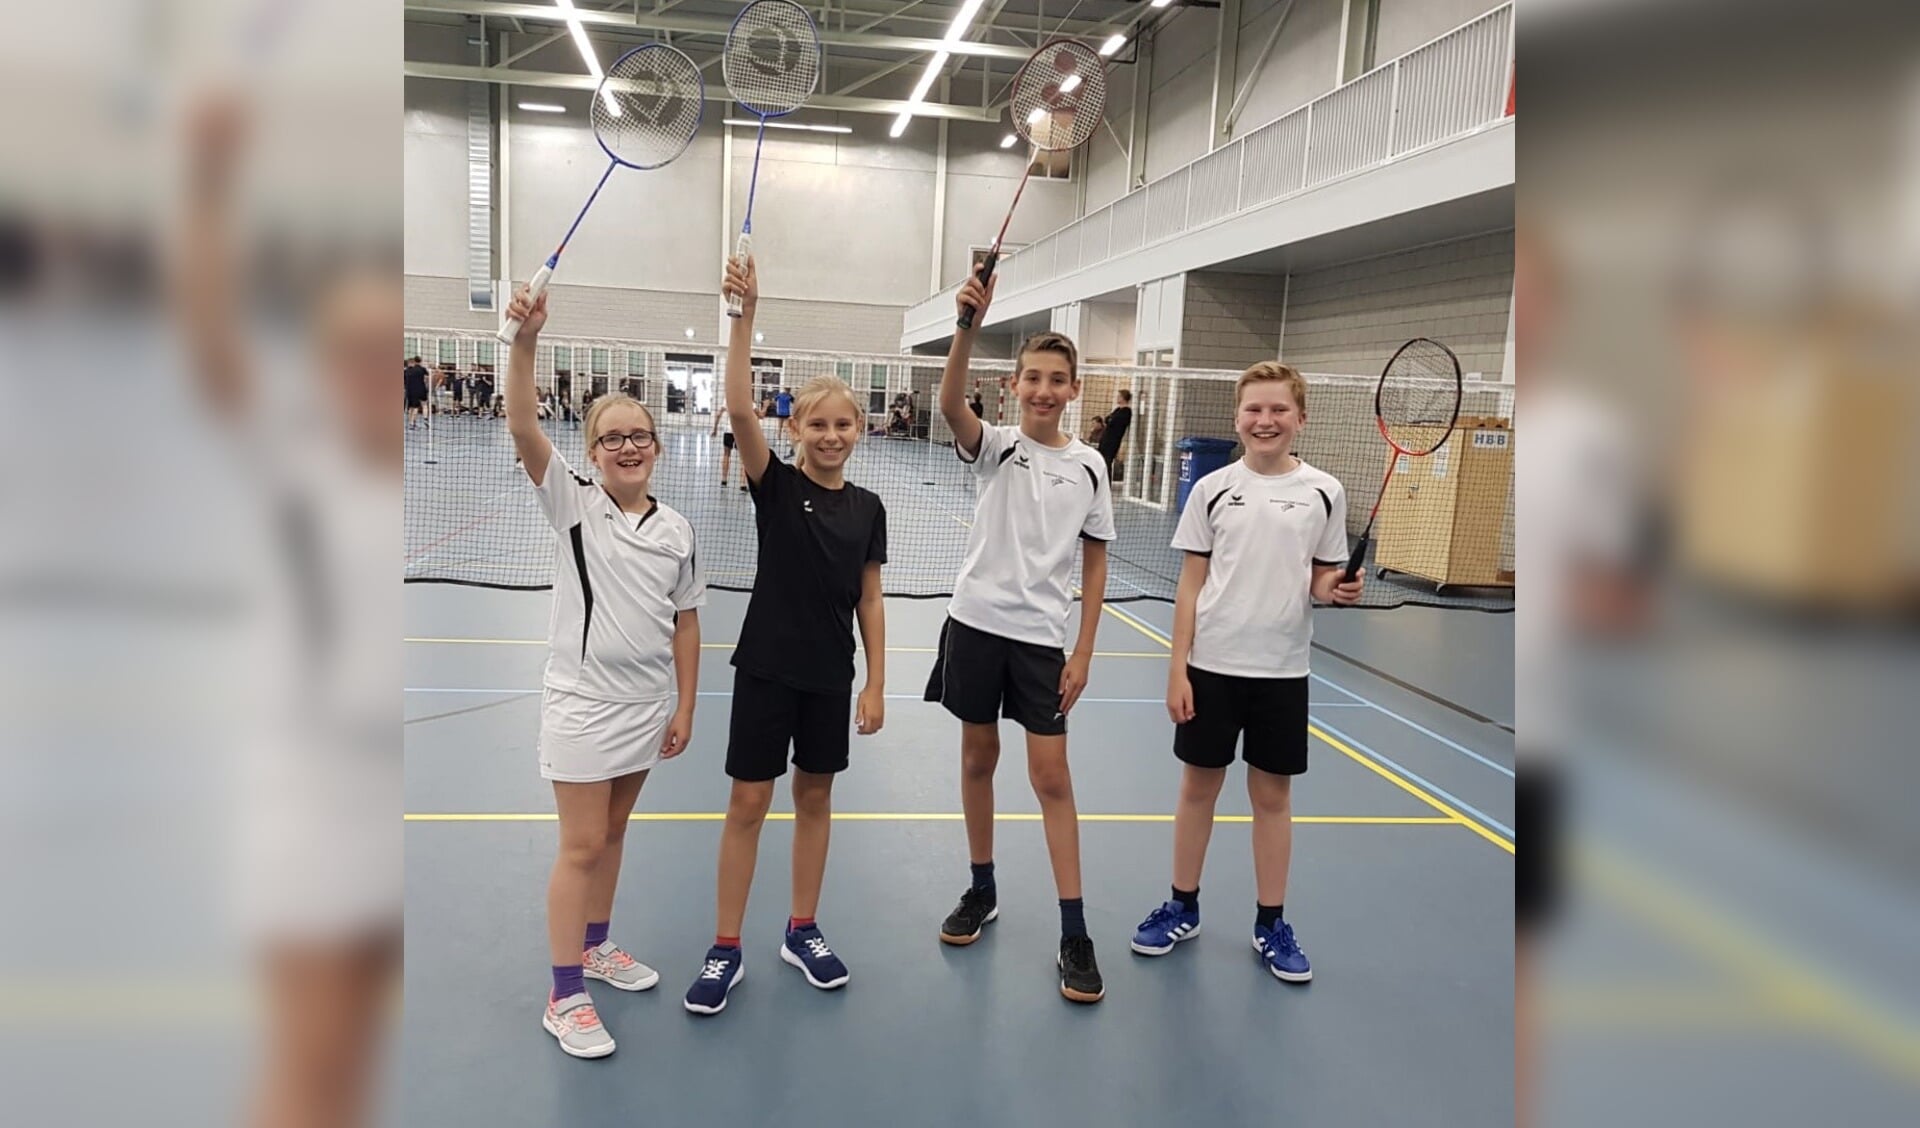 De jeugd staat klaar om weer te gaan badmintonnen